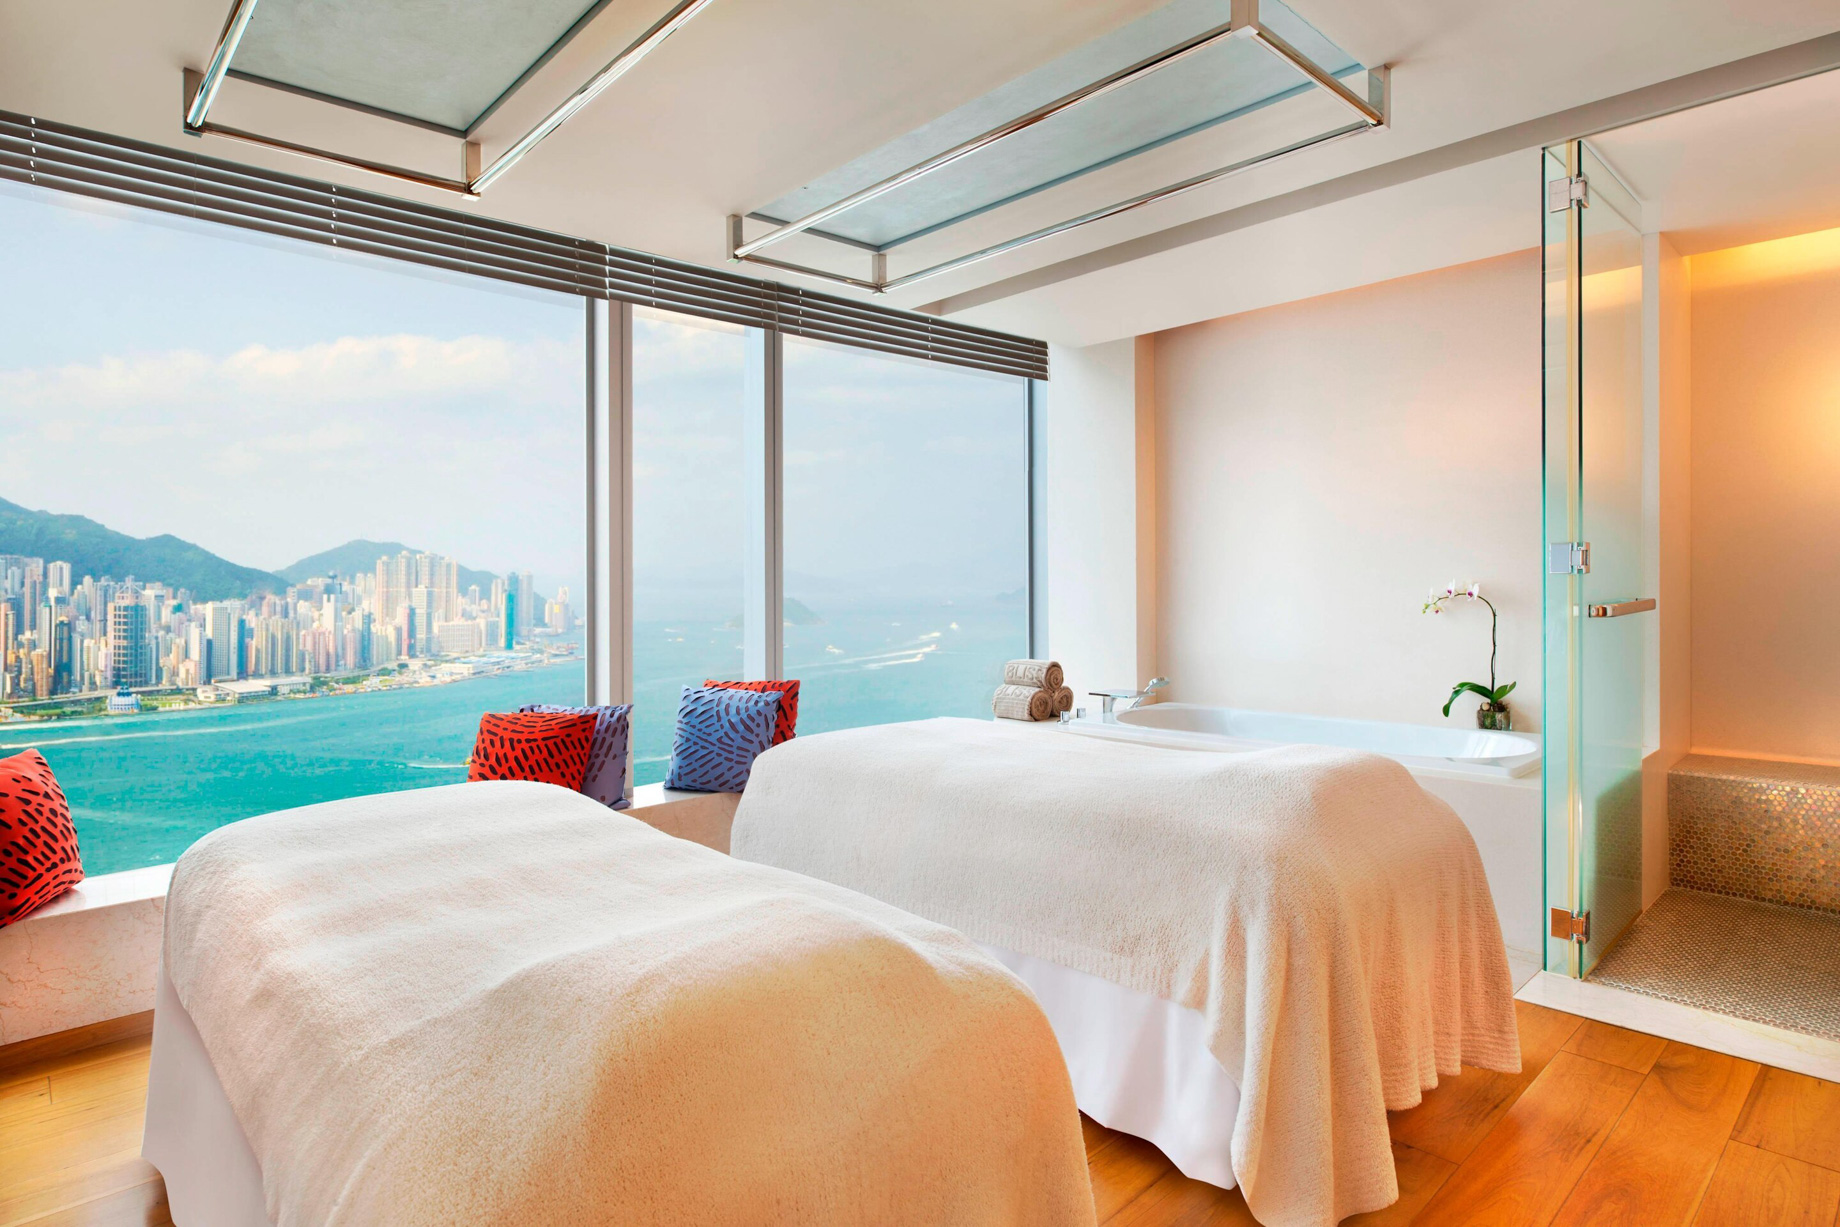 W Hong Kong Hotel – Hong Kong – Bliss Spa Treatment Room